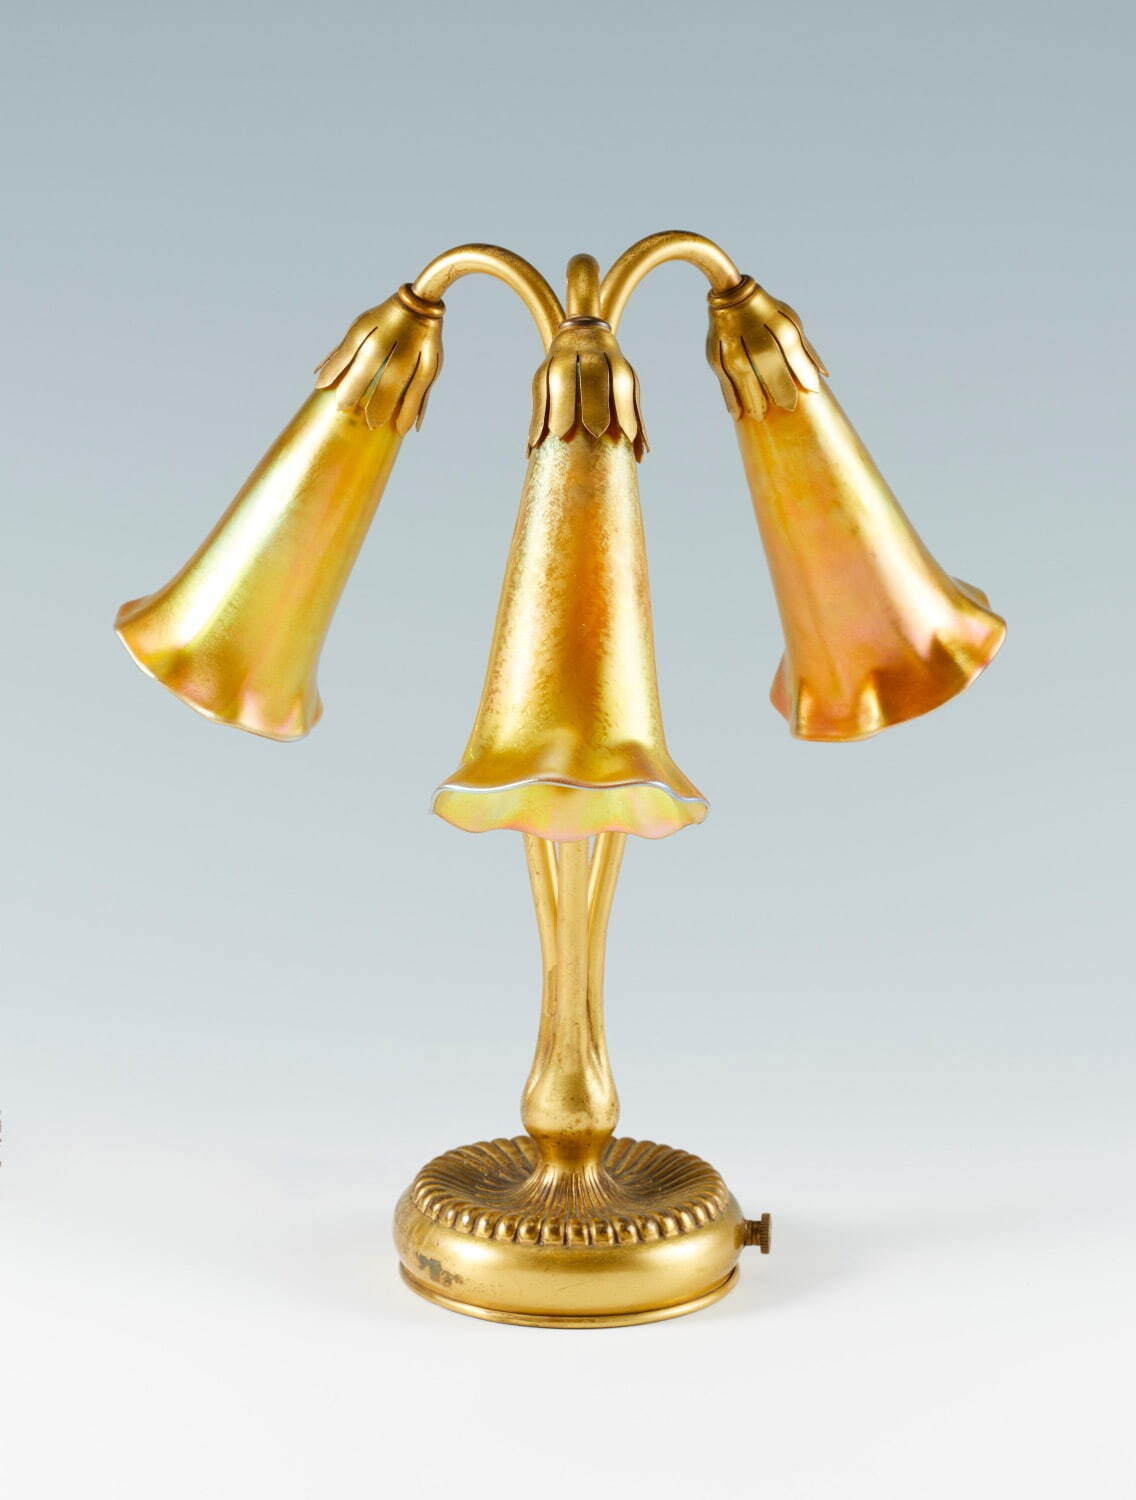 《三輪のリリィの金色ランプ》 1901-25年 ティファニー・スタジオ
Photo ©Brain Trust Inc.